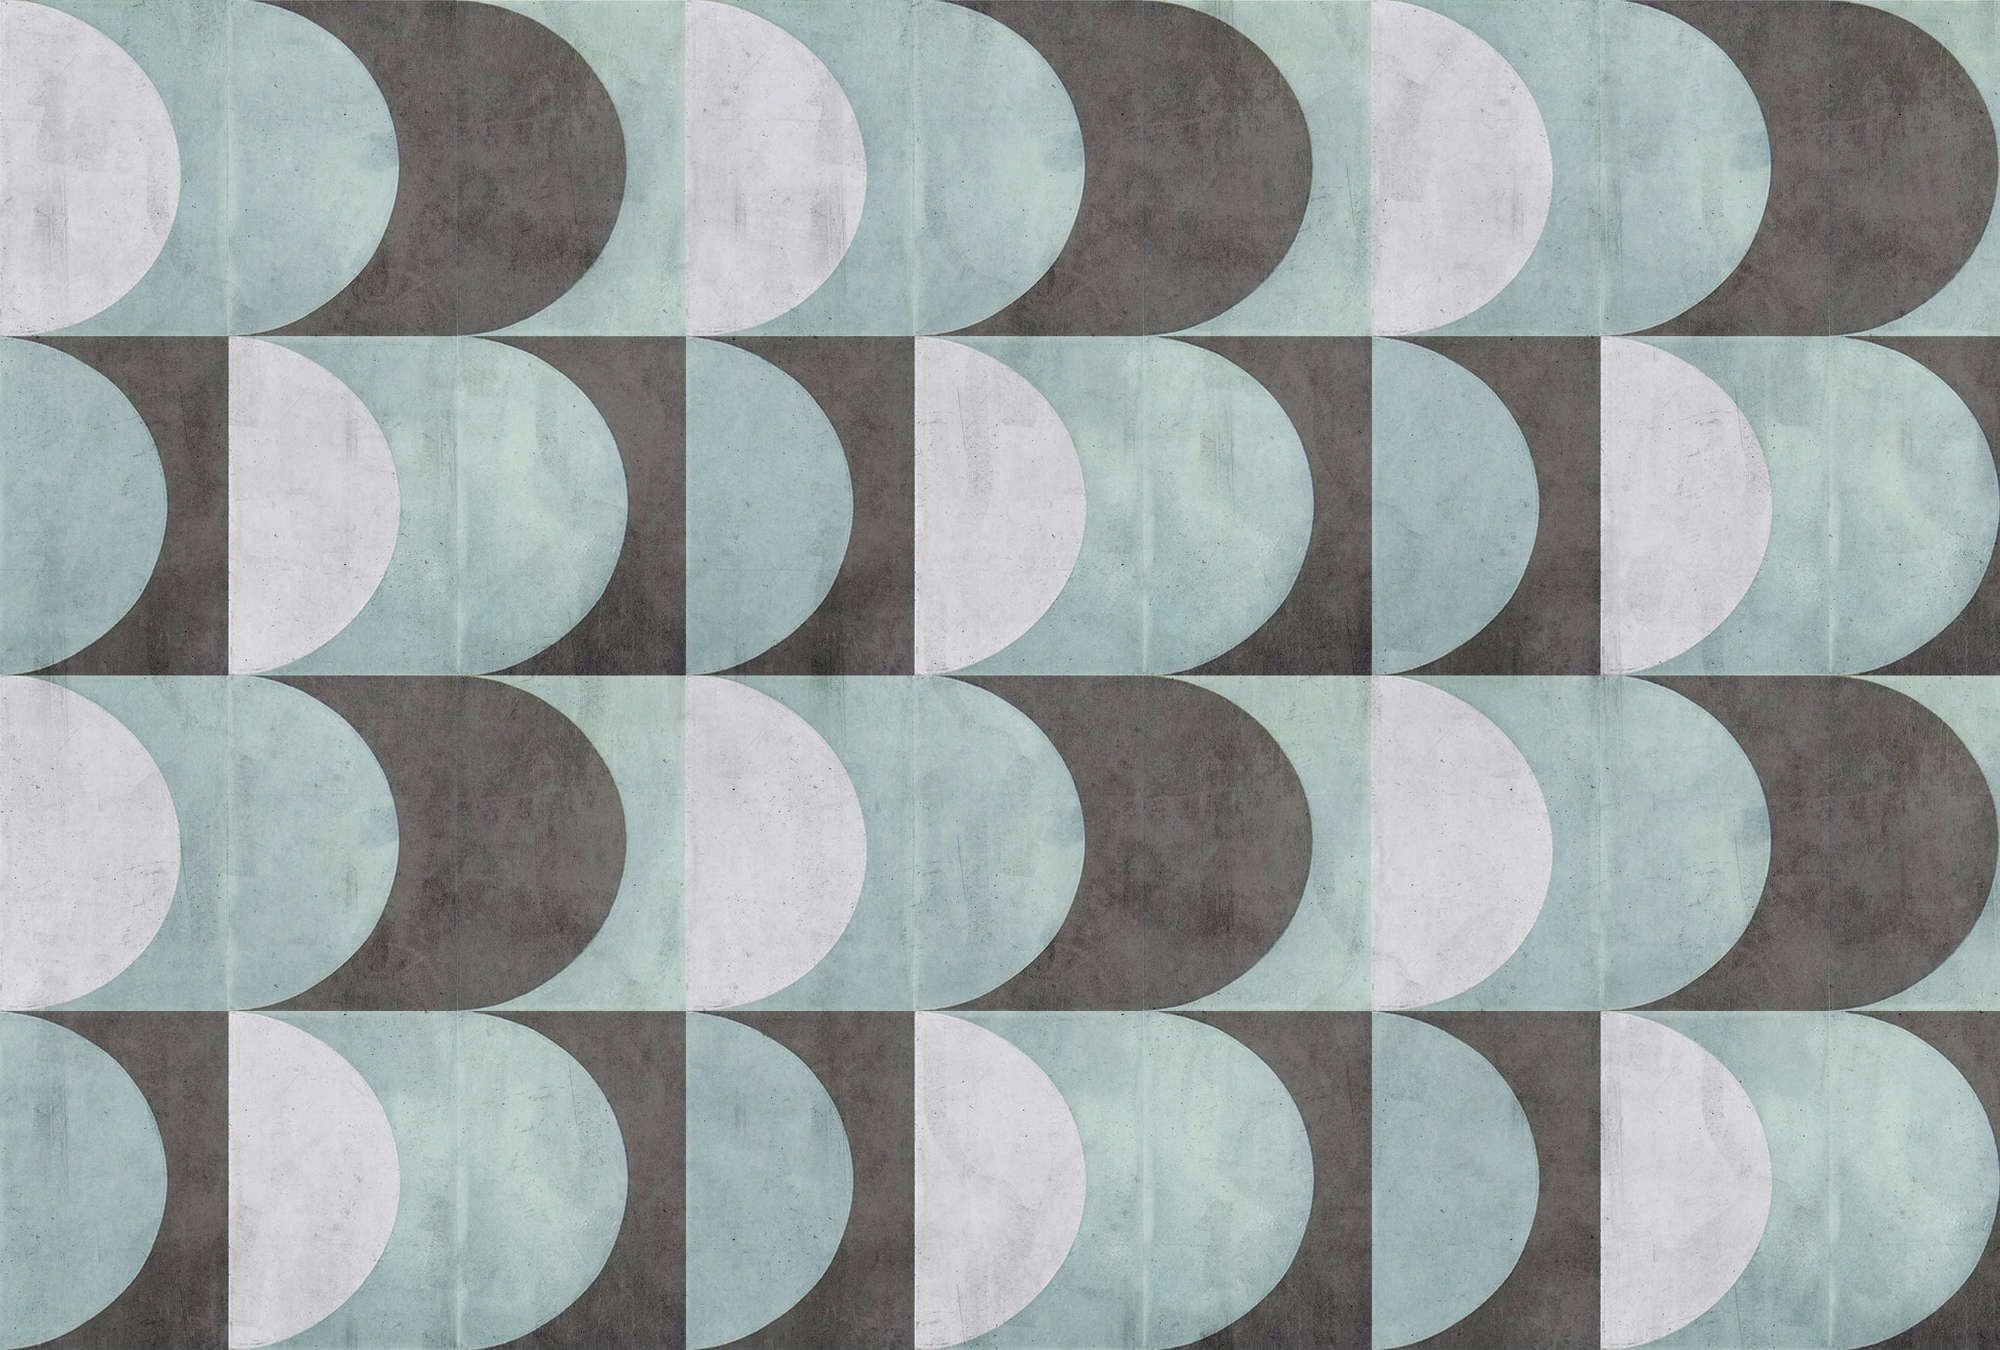             Digital behang »julek 2« - retro patroon in betonlook - mintgroen, grijs | mat, glad vlies
        